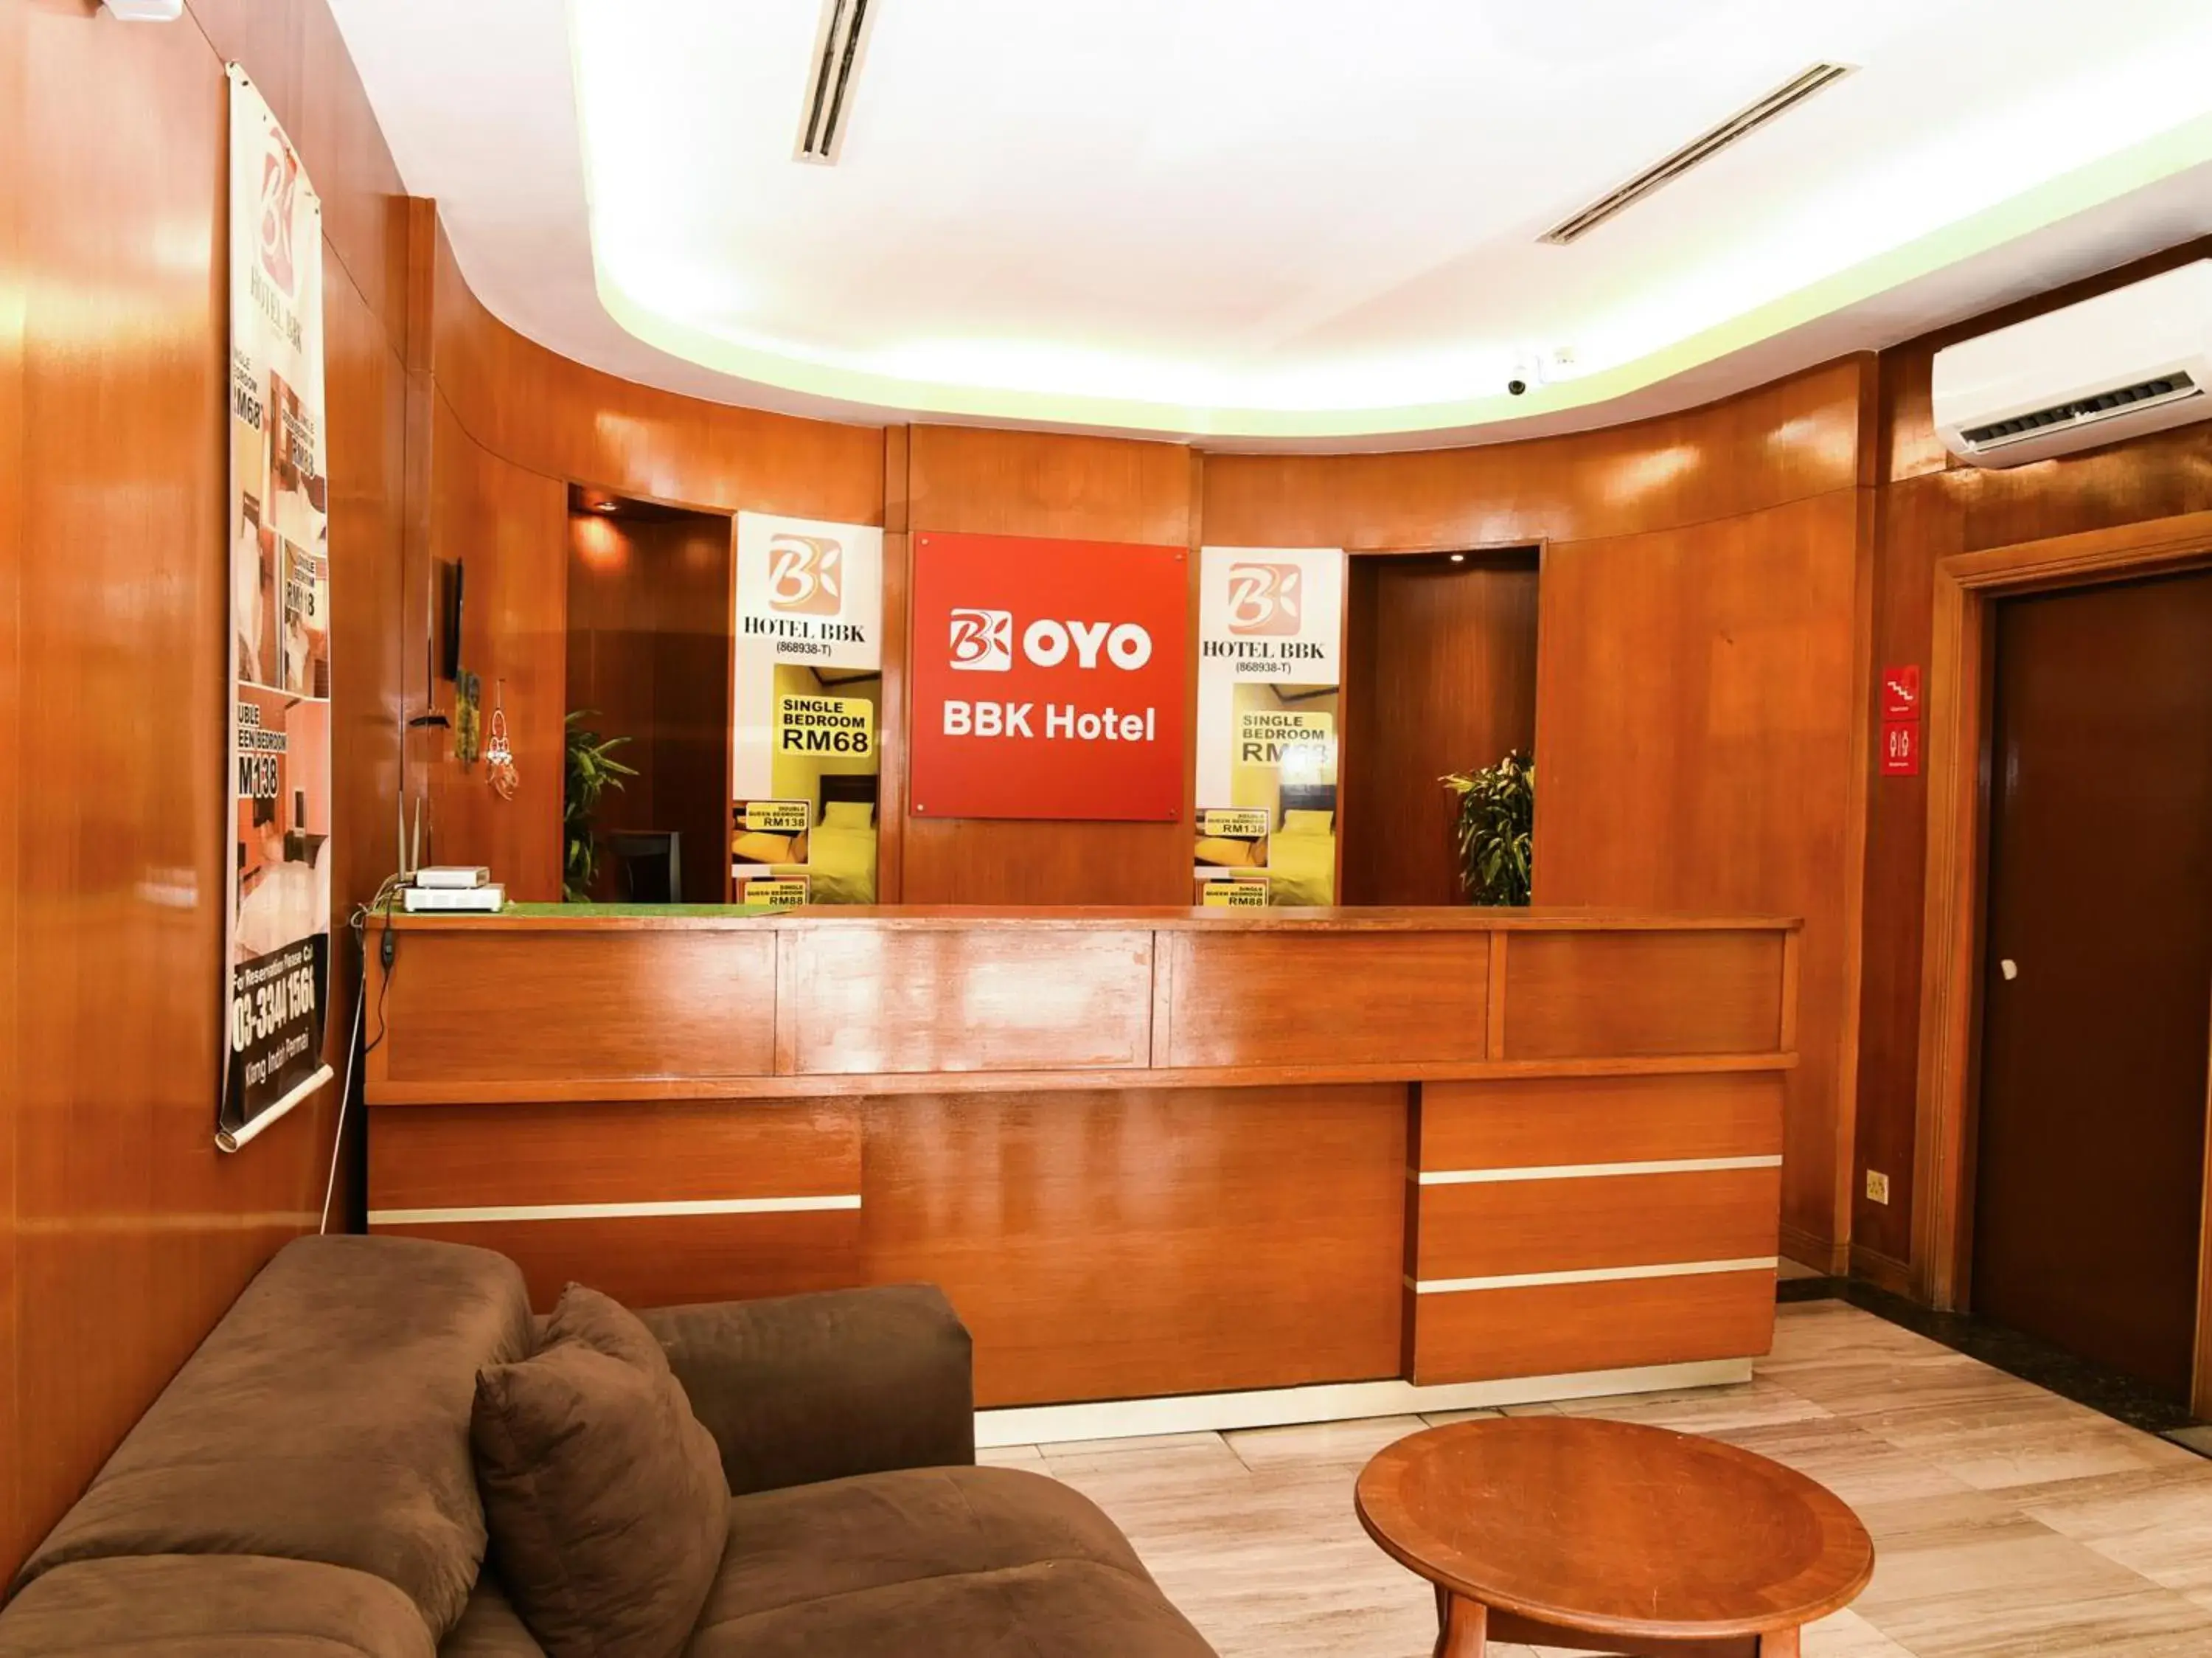 Lobby or reception, Lobby/Reception in Super OYO 1219 Hotel Bbk